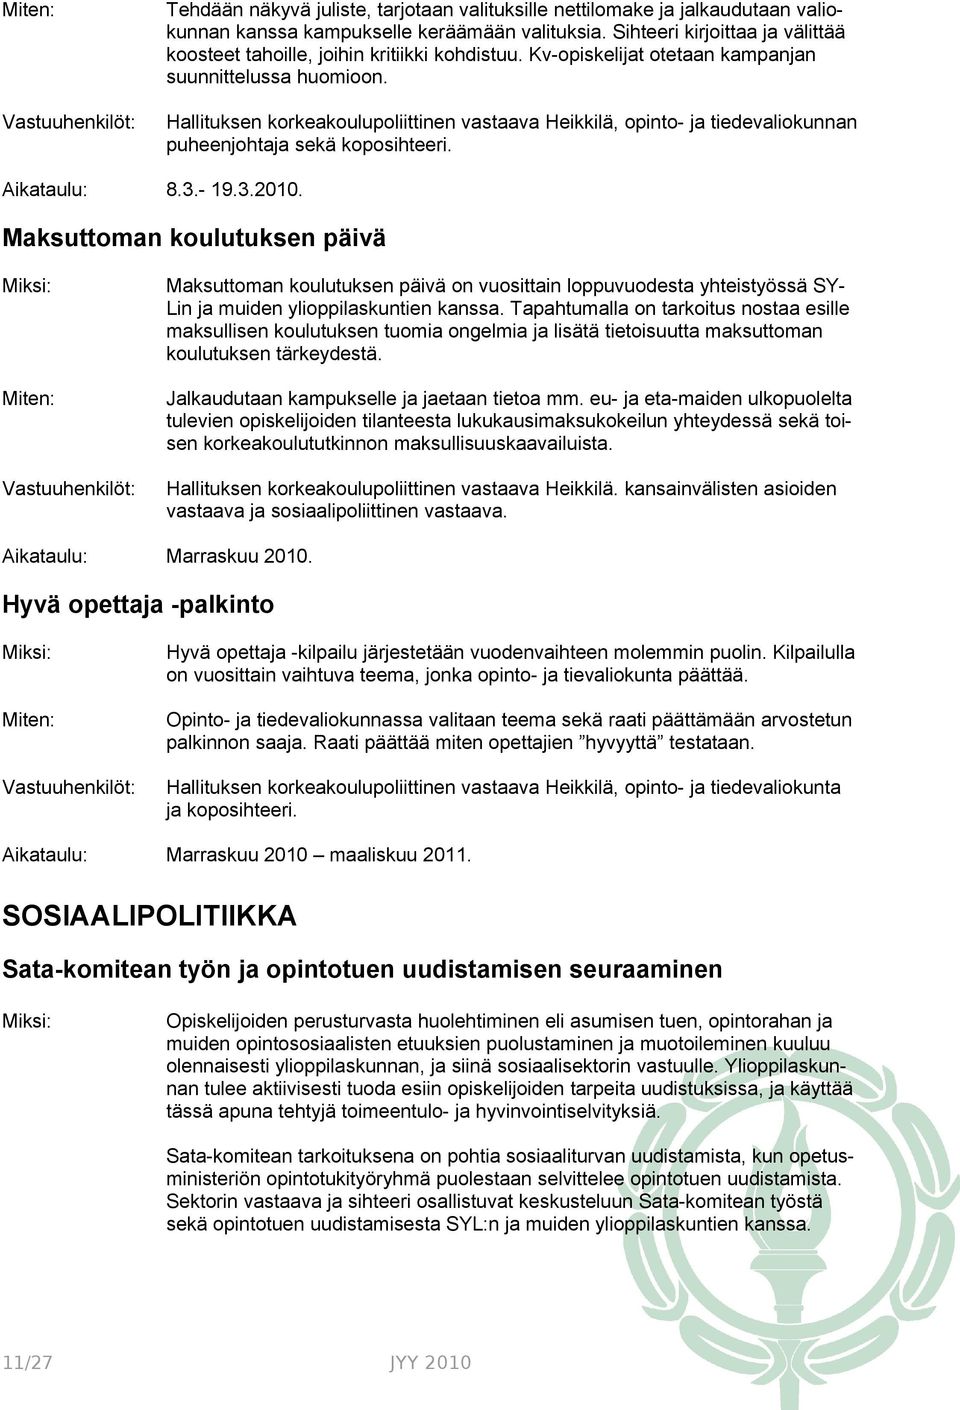 Hallituksen korkeakoulupoliittinen vastaava Heikkilä, opinto- ja tiedevaliokunnan puheenjohtaja sekä koposihteeri. 8.3.- 19.3.2010.